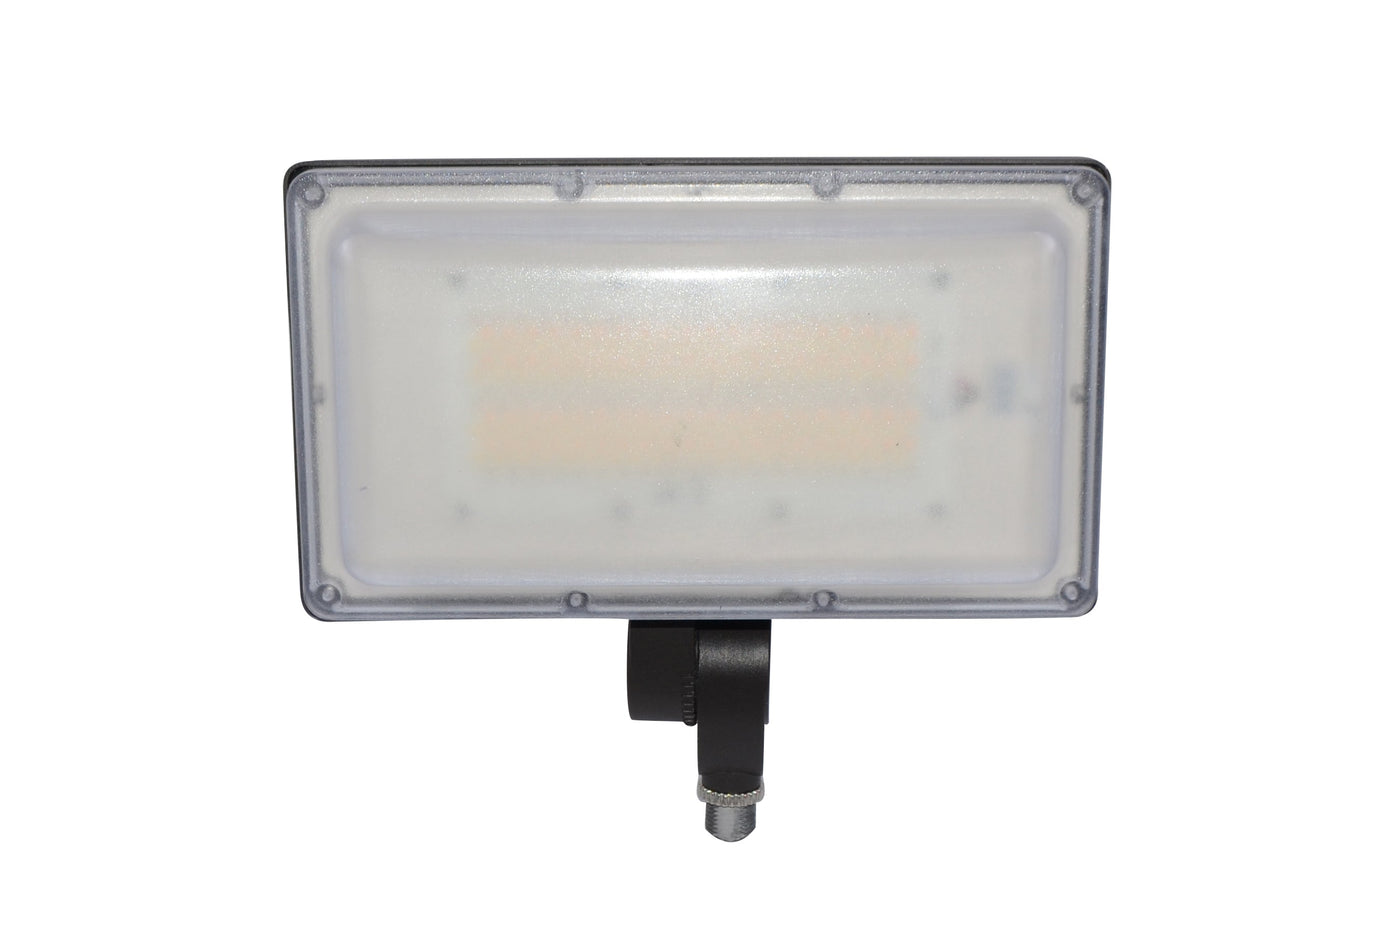 LED Flood Light, G2, 96 Watt, 13479 Lumens, 120-277V, CCT Selectable